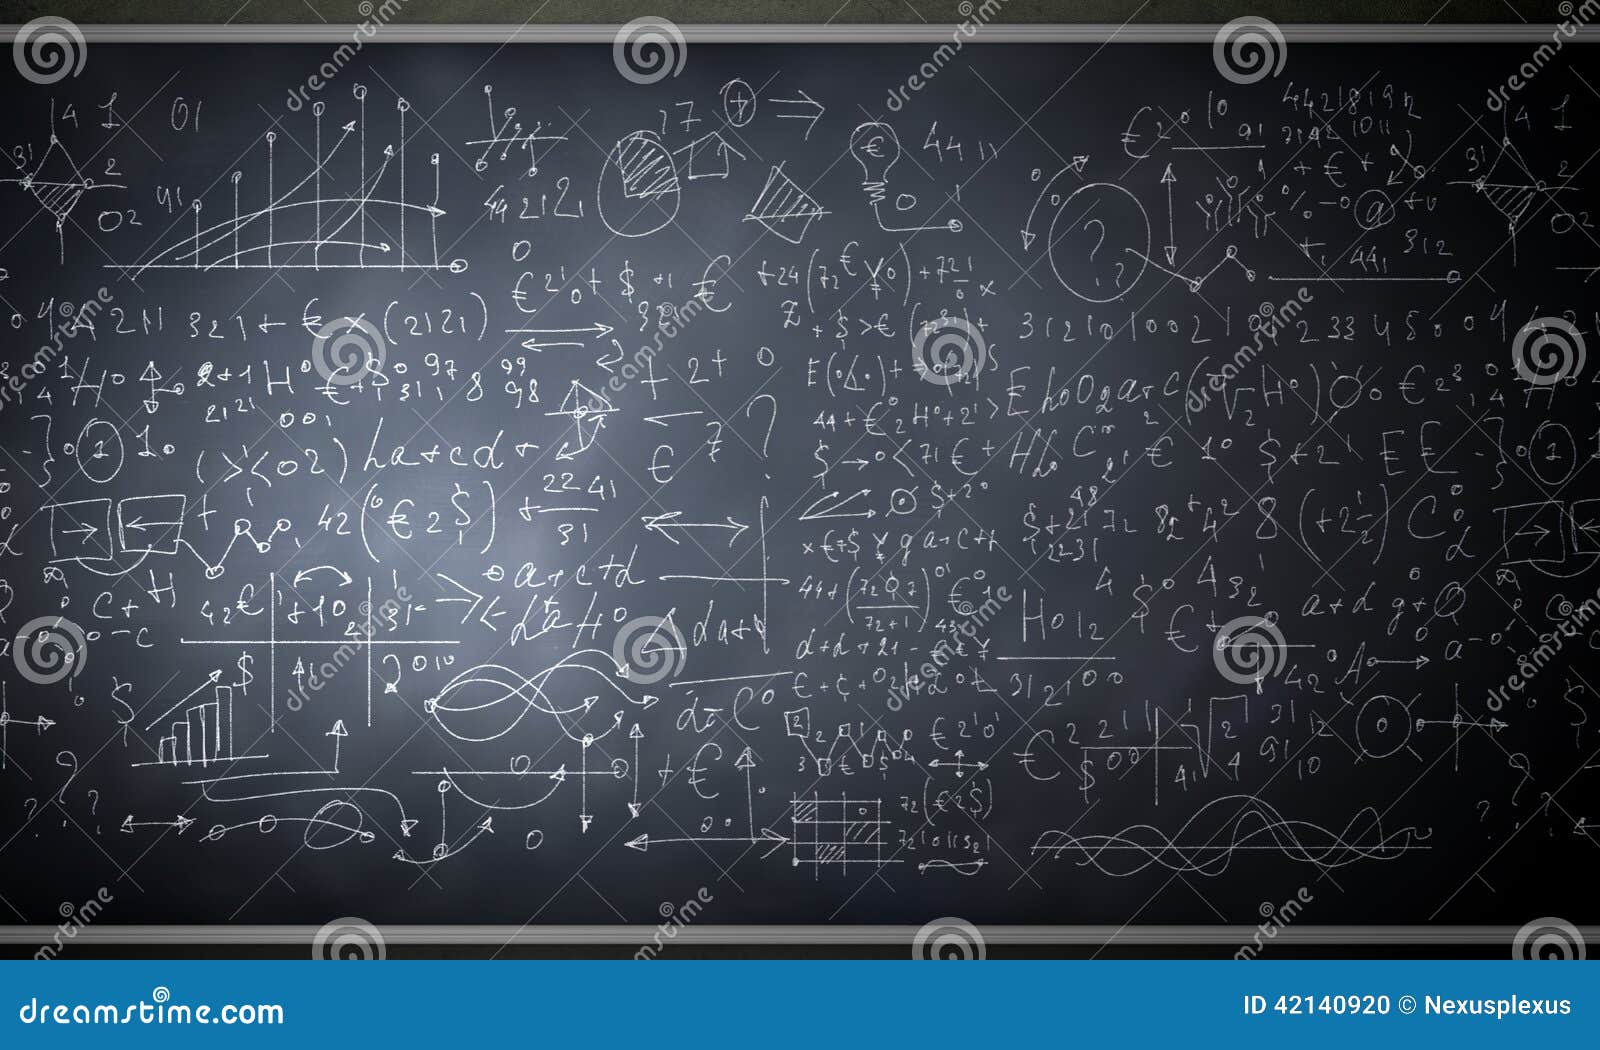 formulas figures background image blackboard science drawings 42140920